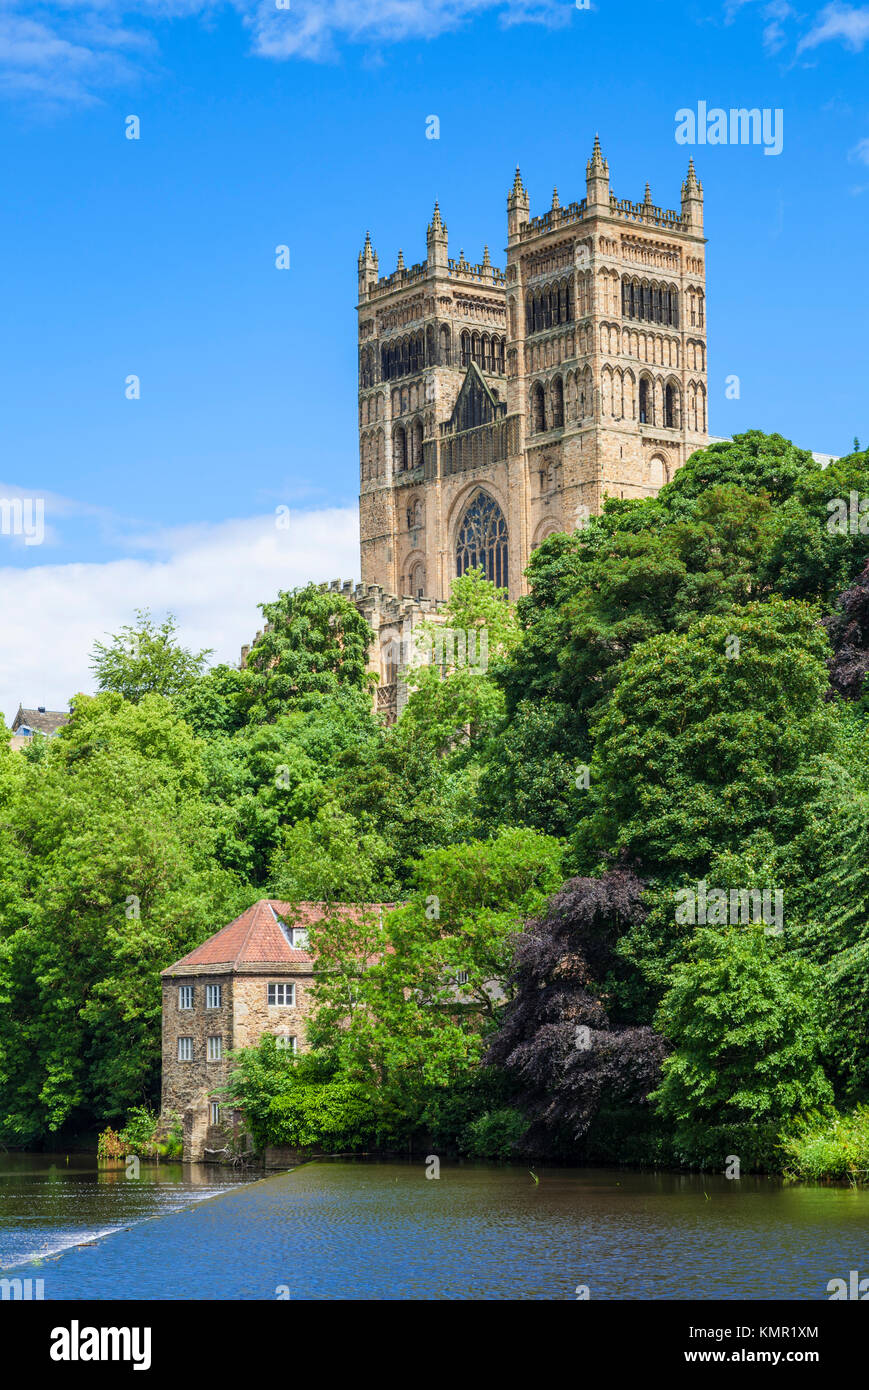 durham angleterre cathédrale de durham façade au-dessus de l'usure de la rivière durham Comté Durham Angleterre gb europe Banque D'Images